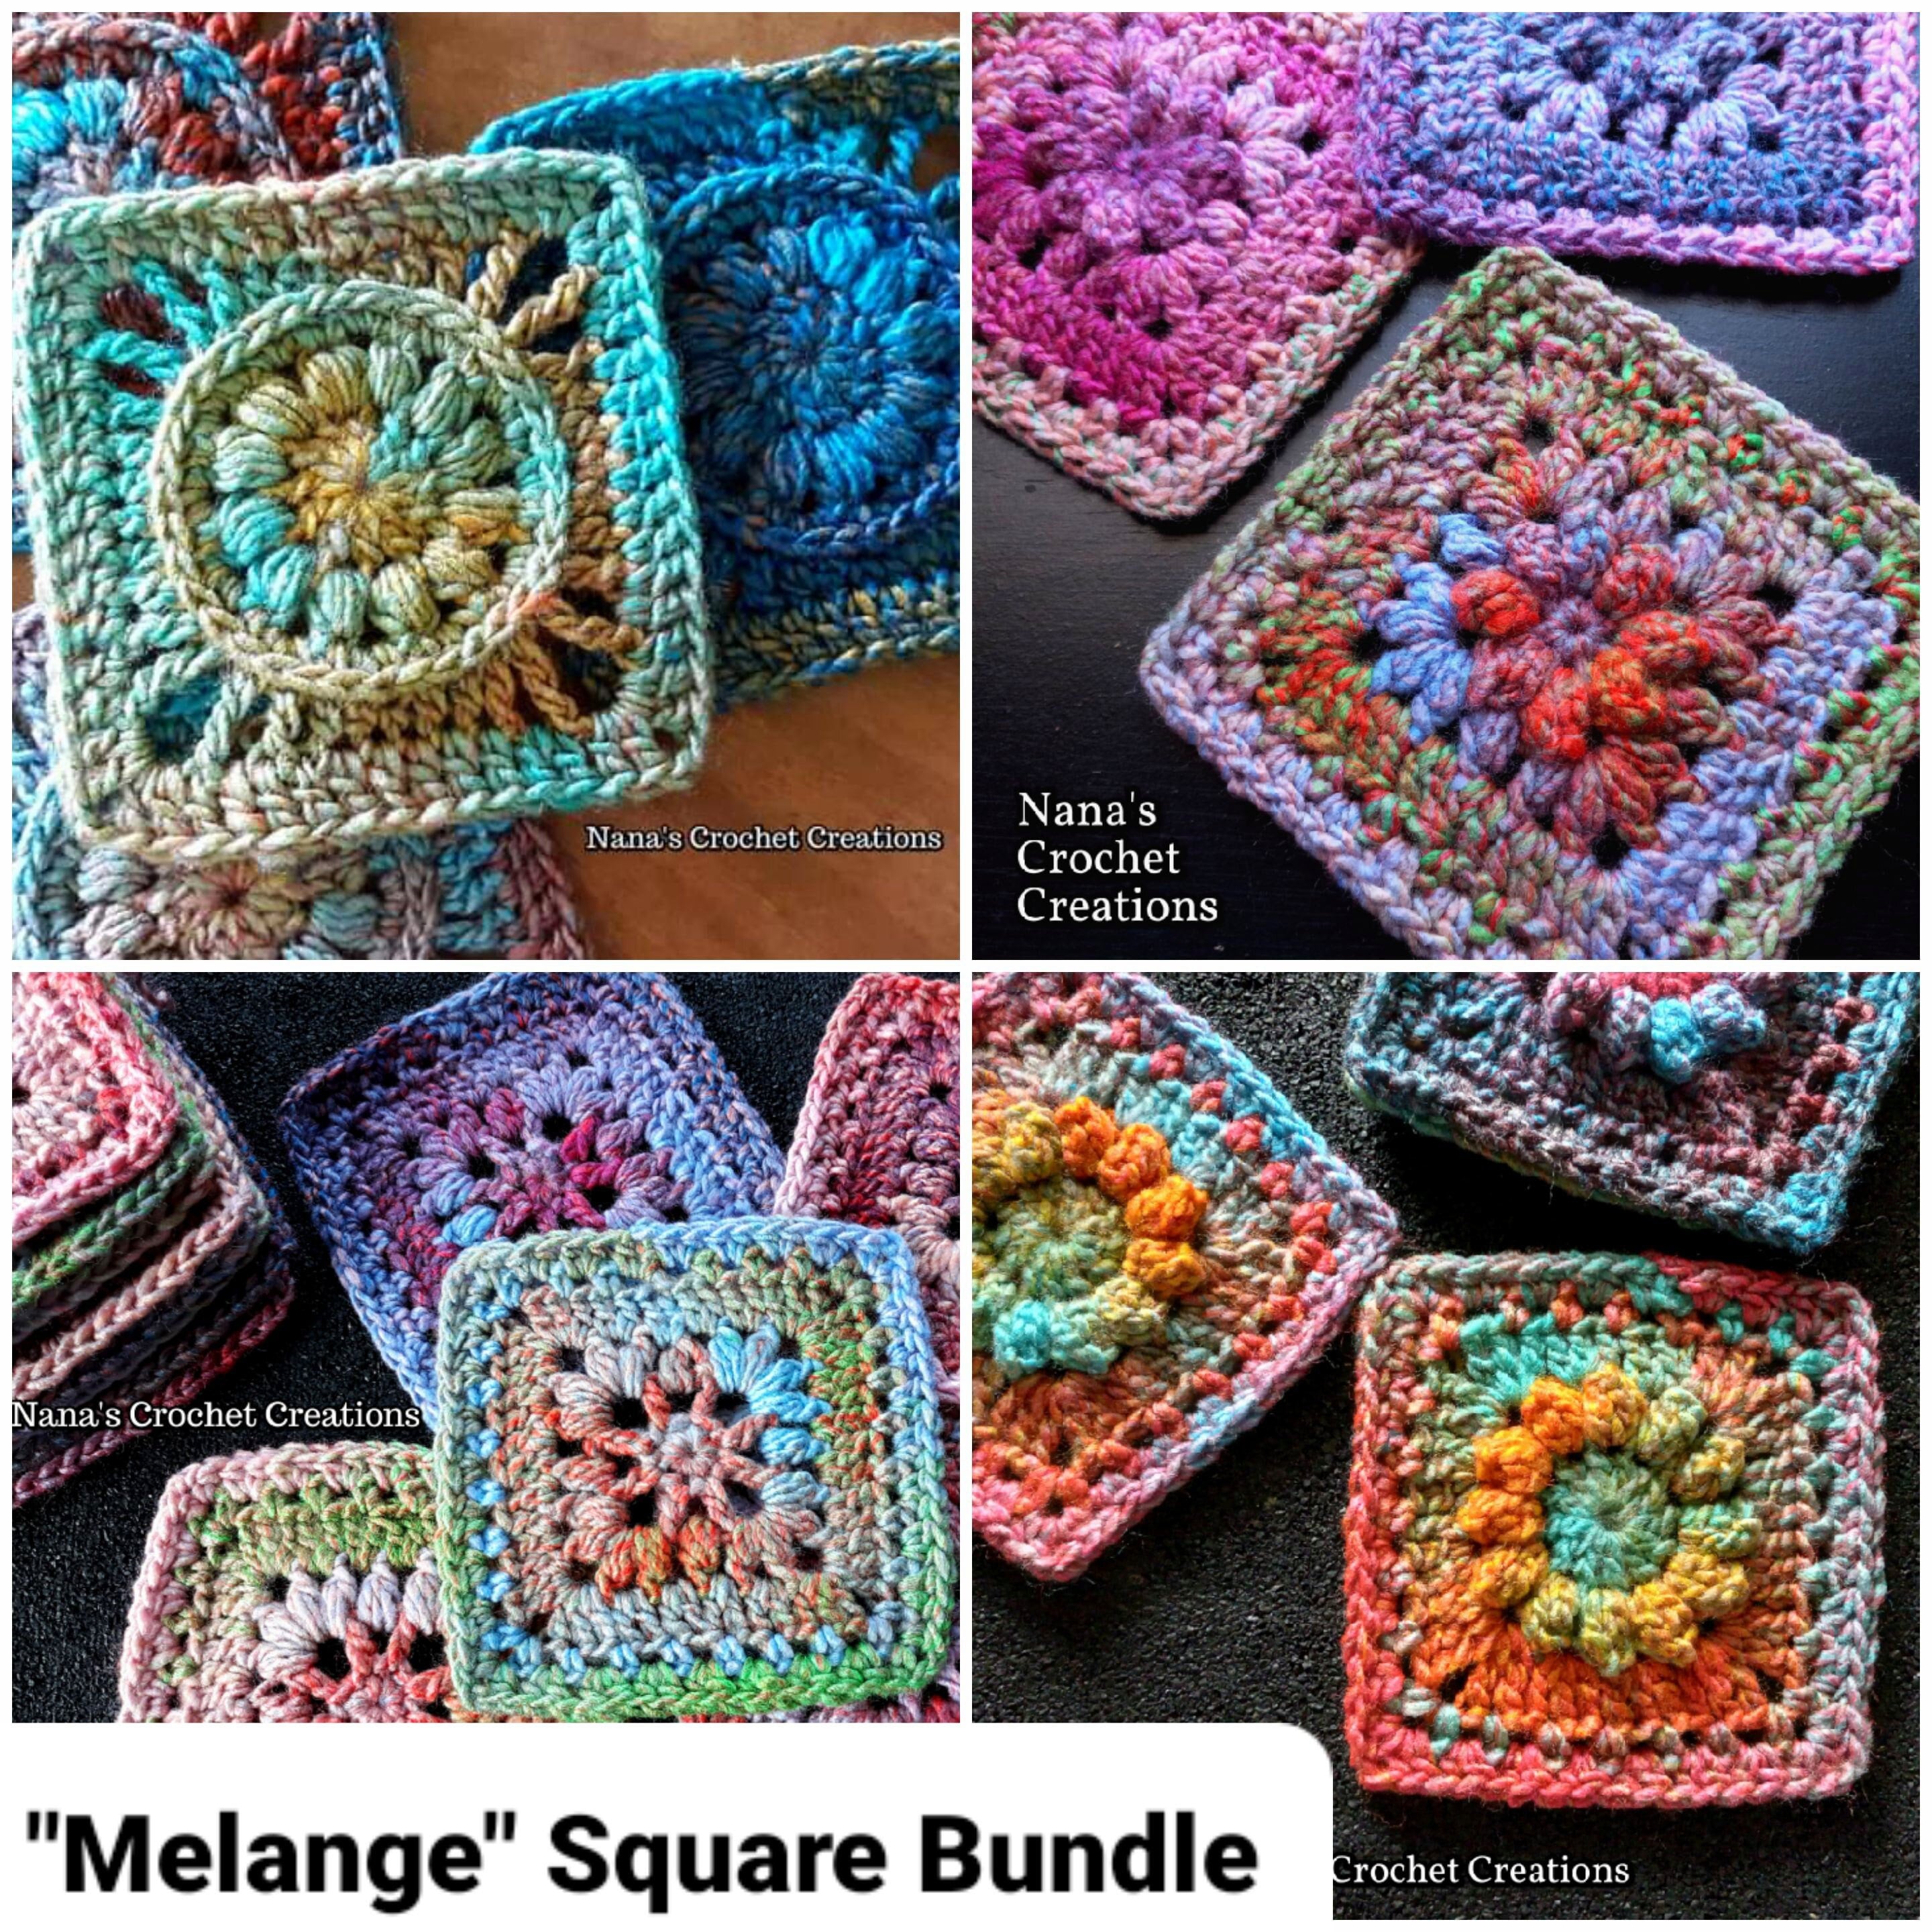 How to Crochet The Melange Flower Blanket Square (Free Crochet